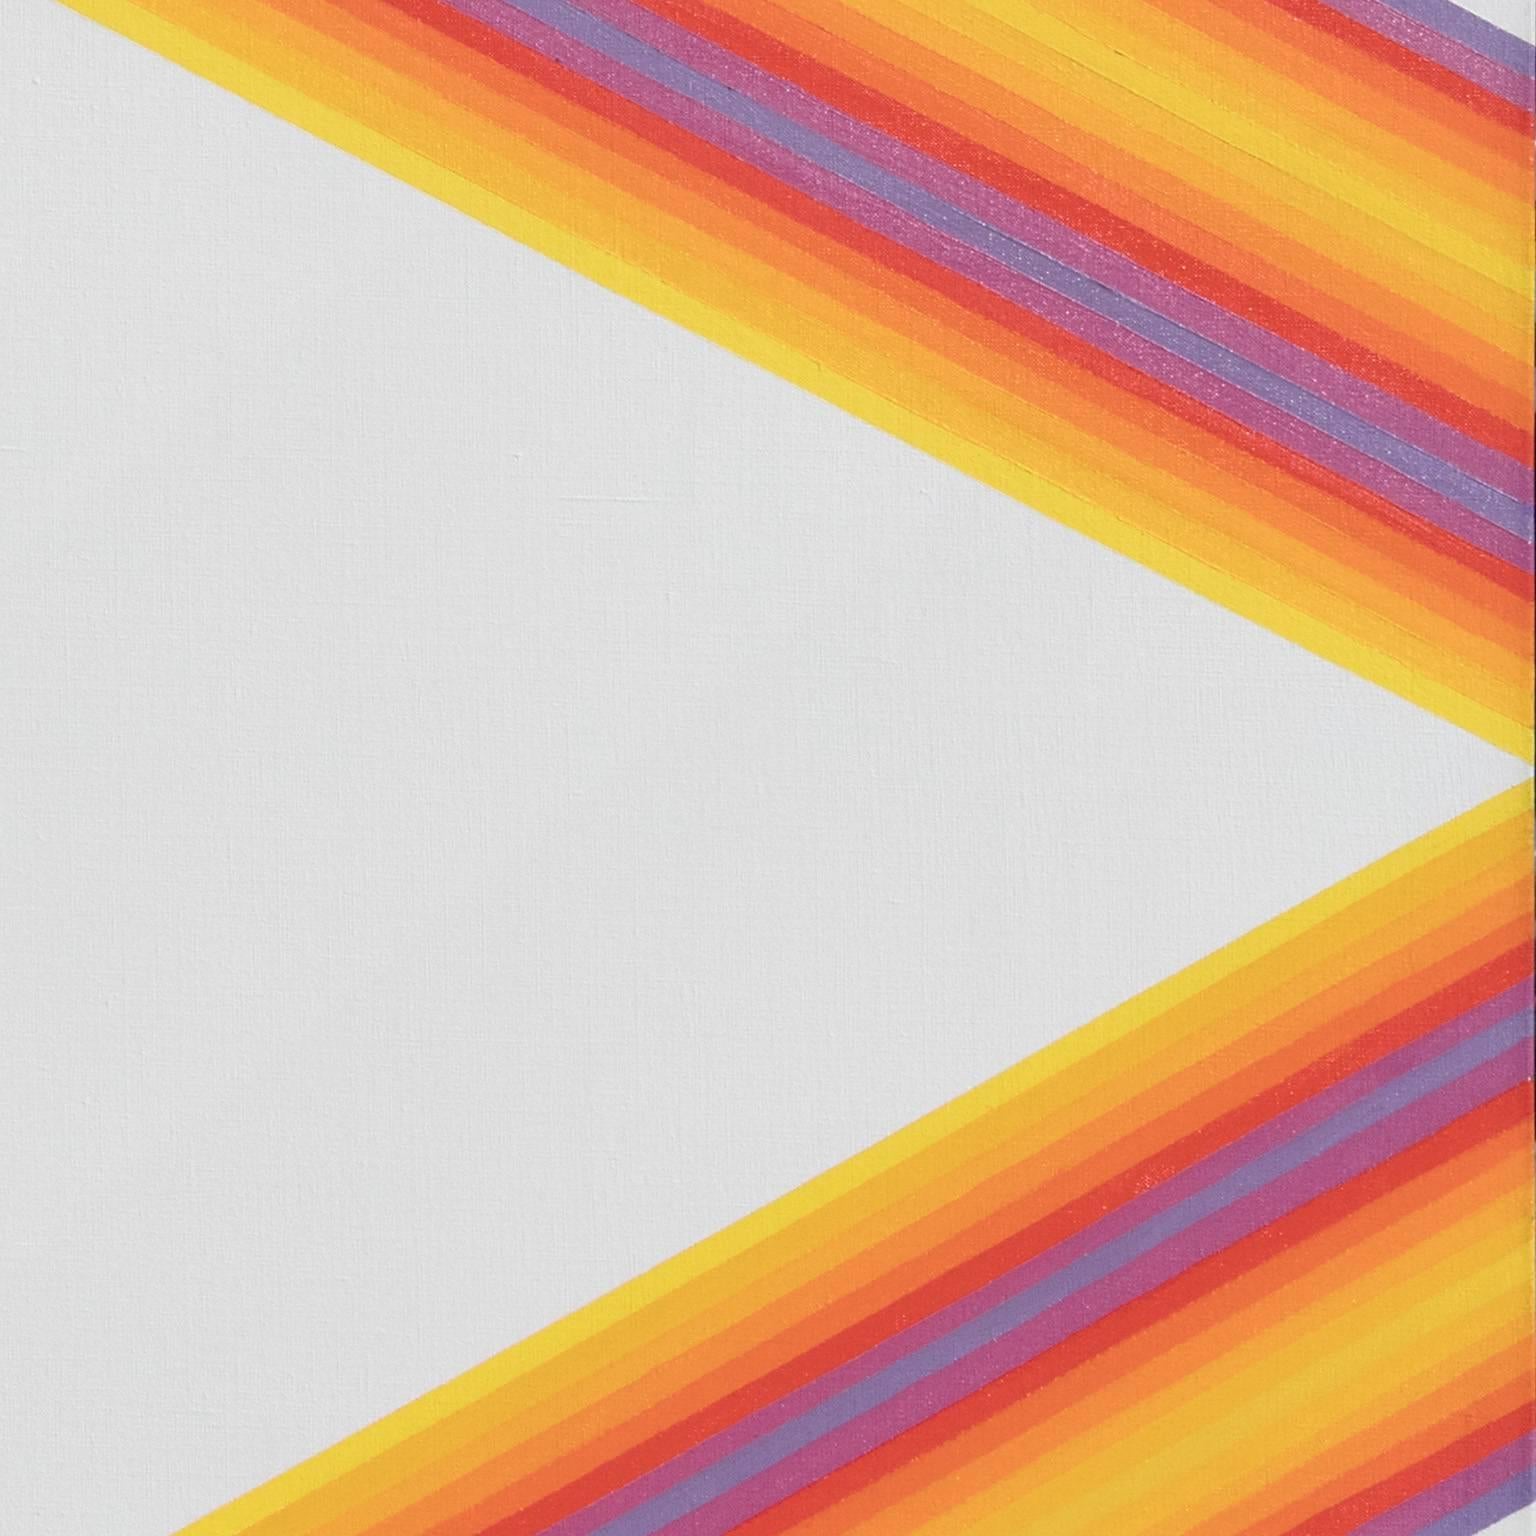 Une peinture à l'huile abstraite géométrique sans titre de Martin Canin, mesurant 60x50-inch. L'œuvre de Martin Canin peut être rattachée à deux mouvements des années 1960 : le Color field et l'Op Art. Comme beaucoup d'artistes de l'époque, Canin se